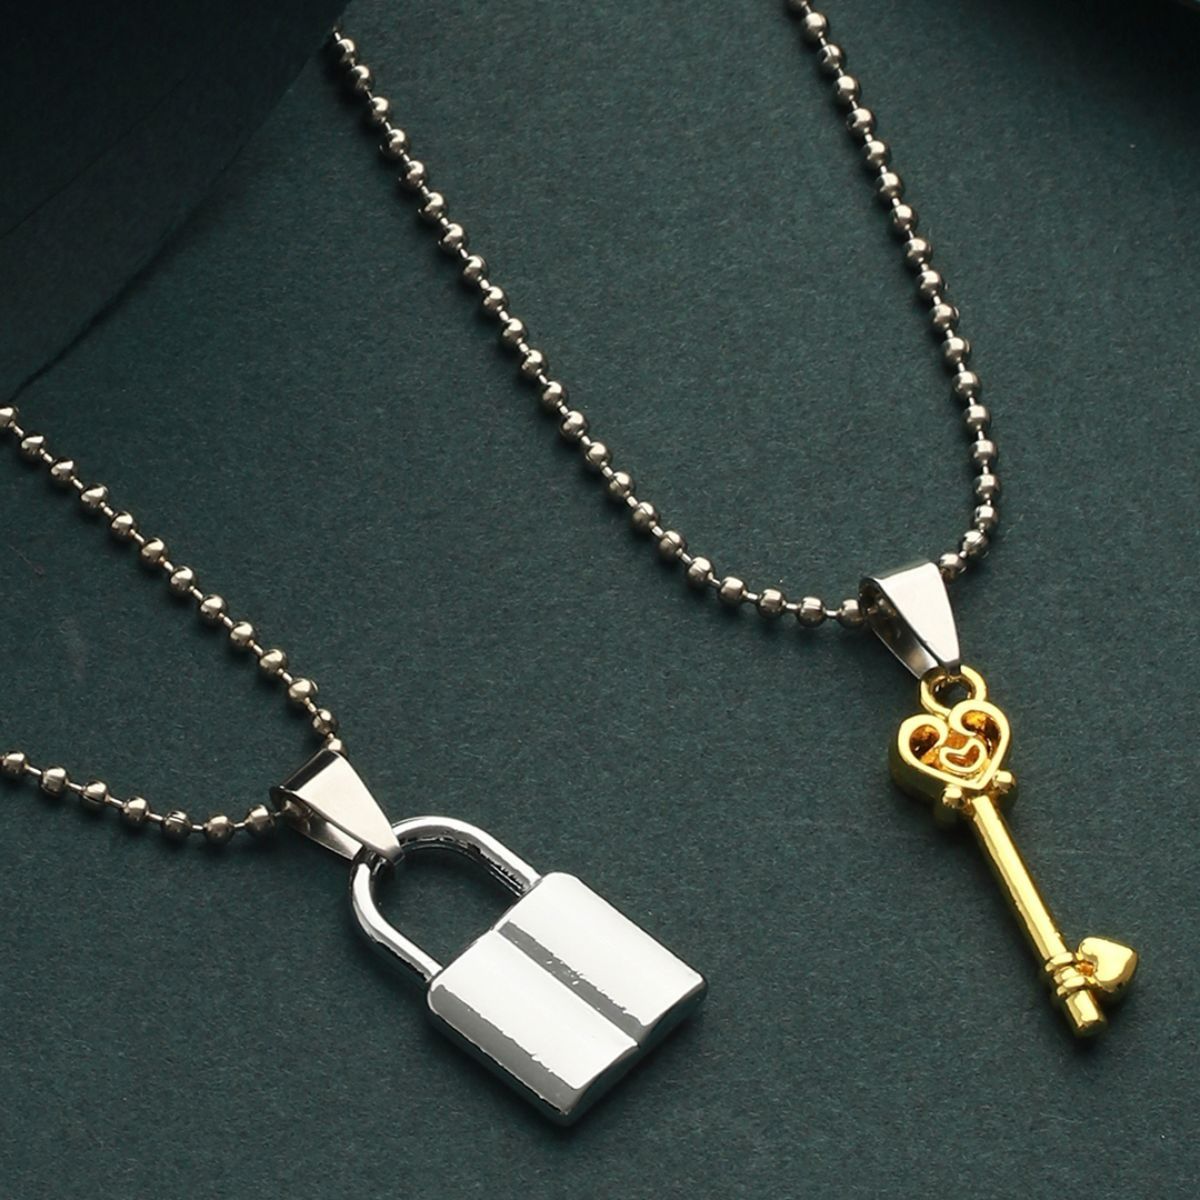 Uloveido Shield Key Pendant Necklace and Lock India | Ubuy